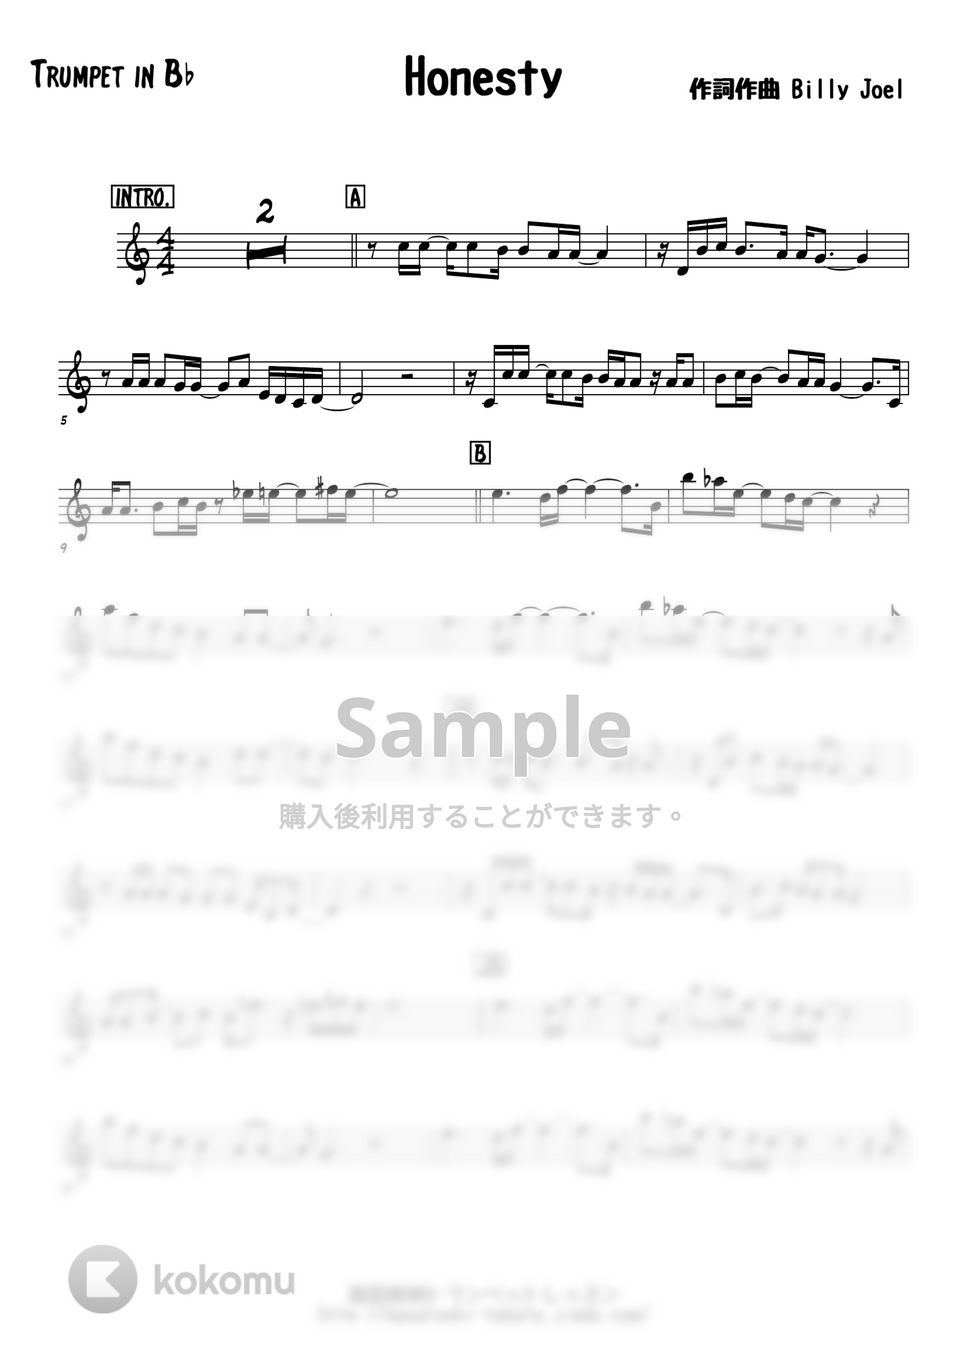 ビリージョエル - HONESTY (メロディー楽譜) by 高田将利